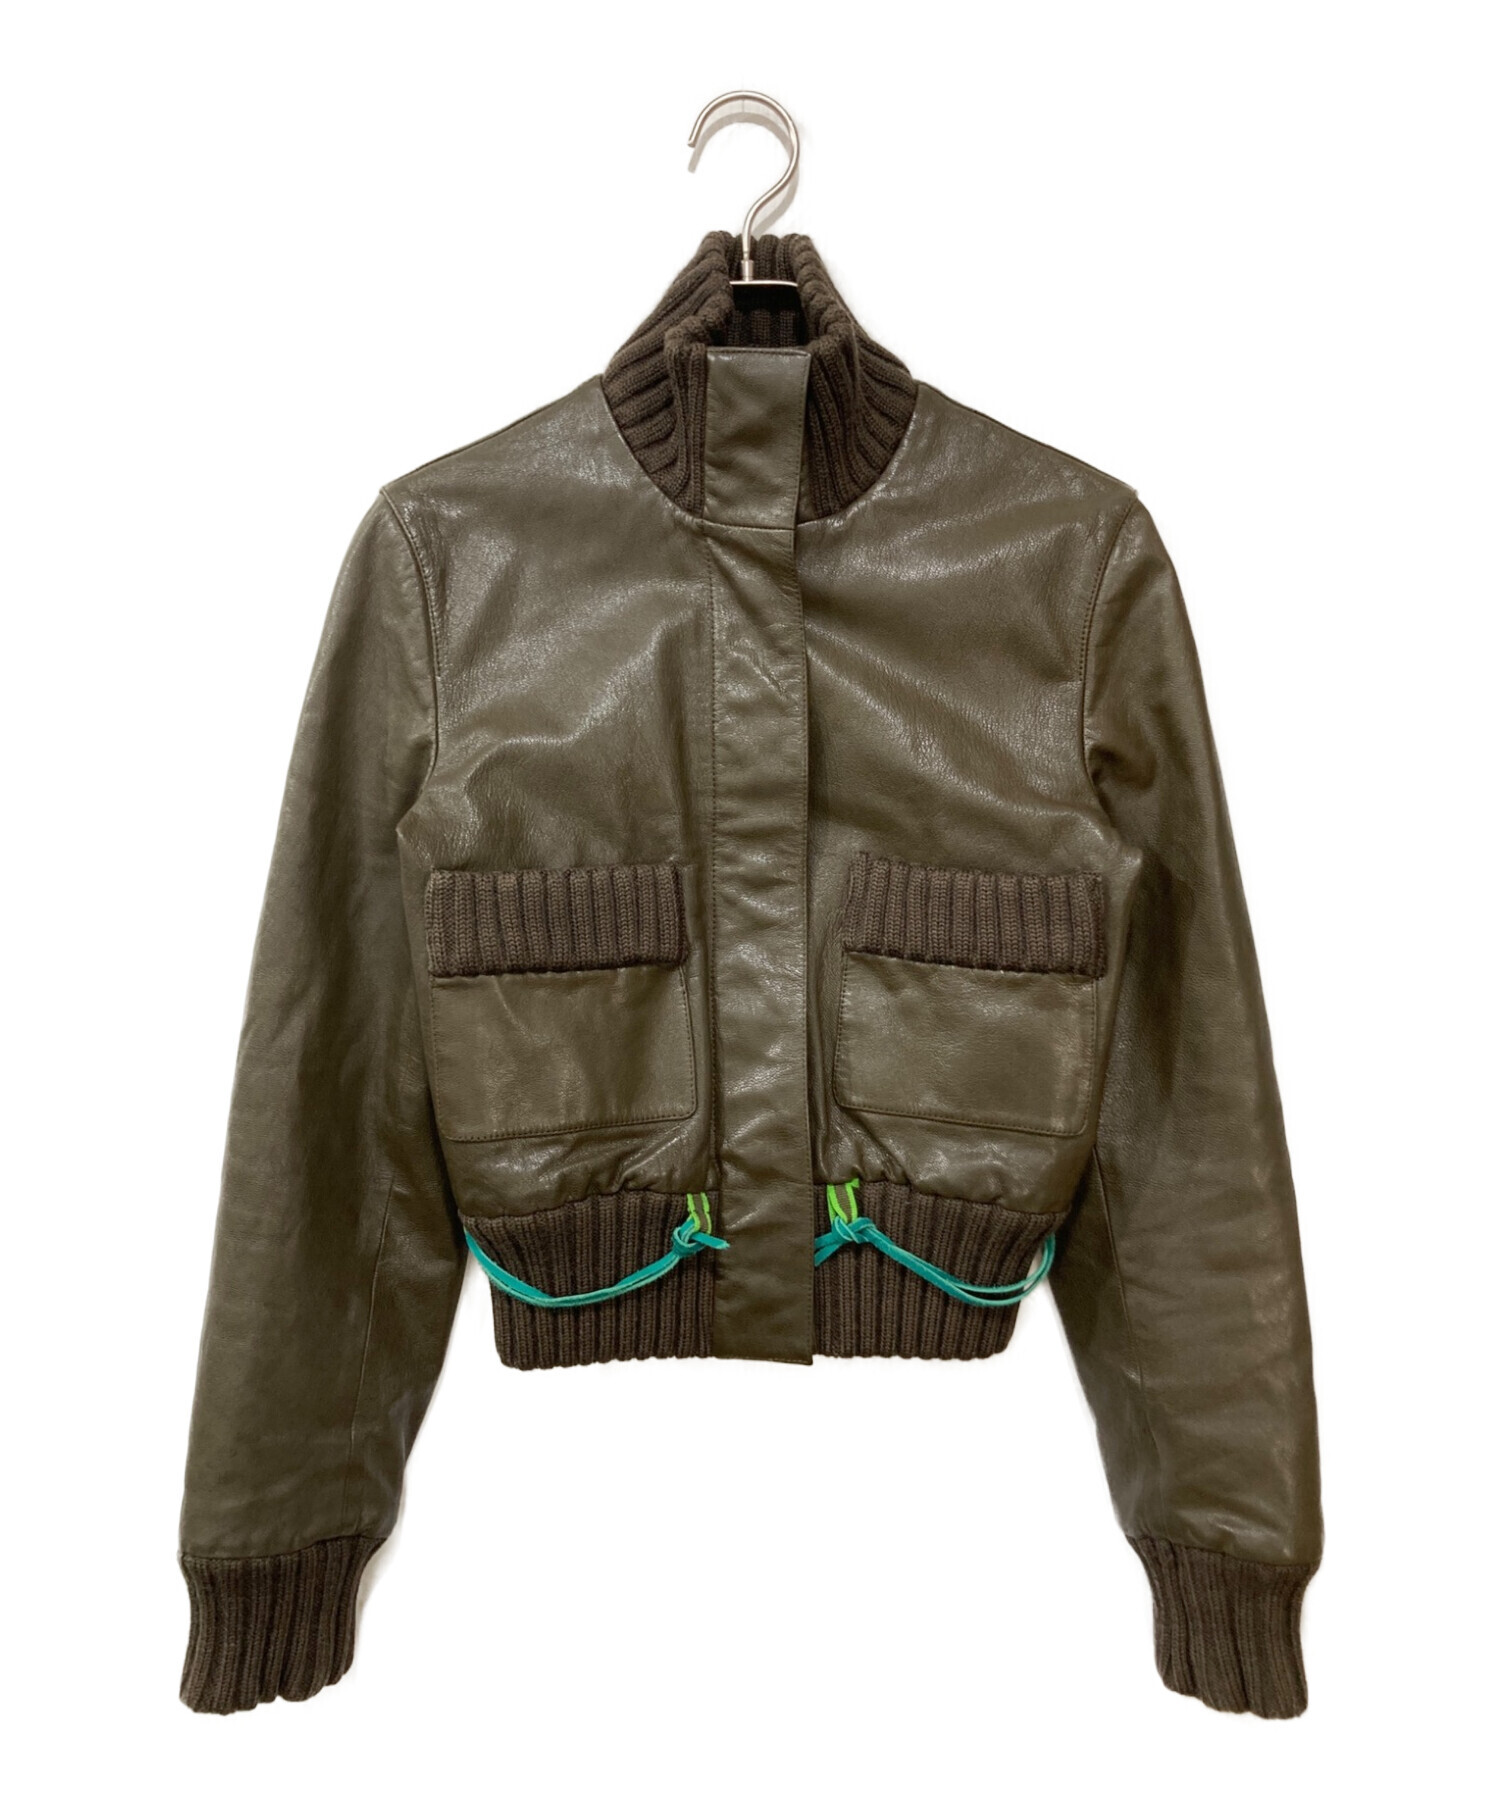 ナイキNIKEarchive leather bomber jacket